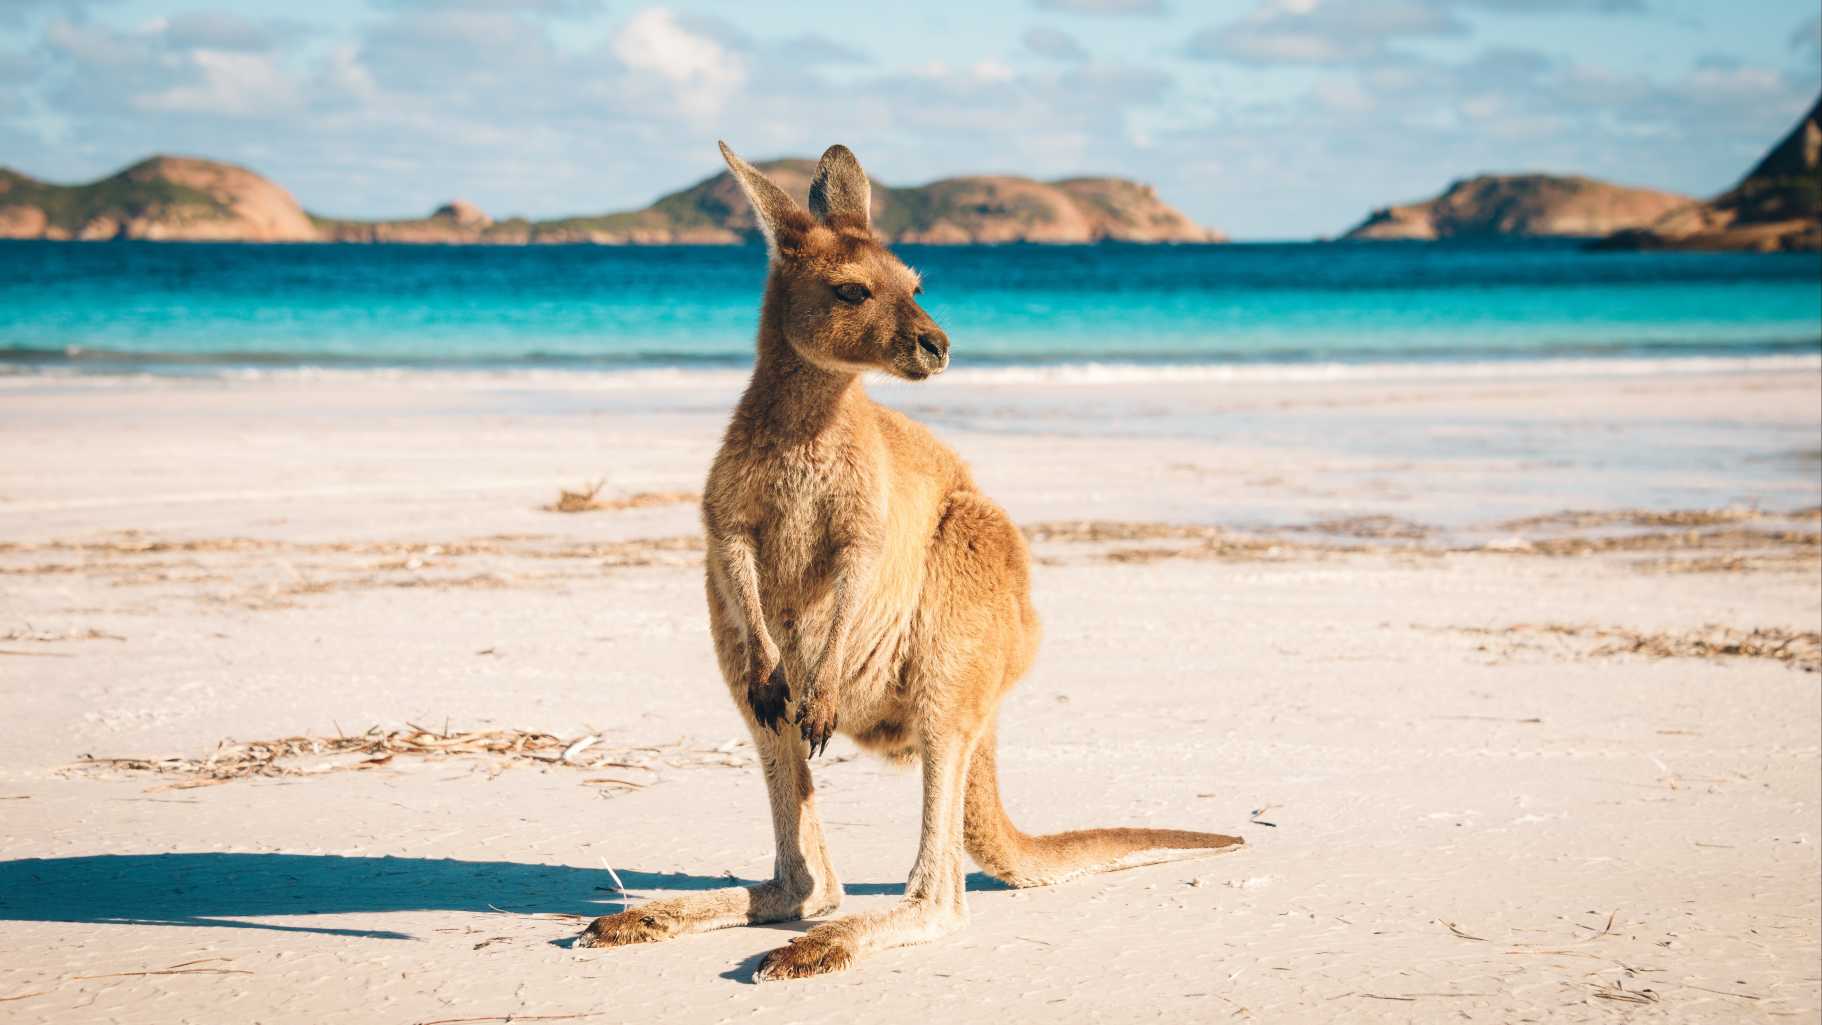 Découvrez les kangourous sauvages pendant votre voyage à Kangaroo Island